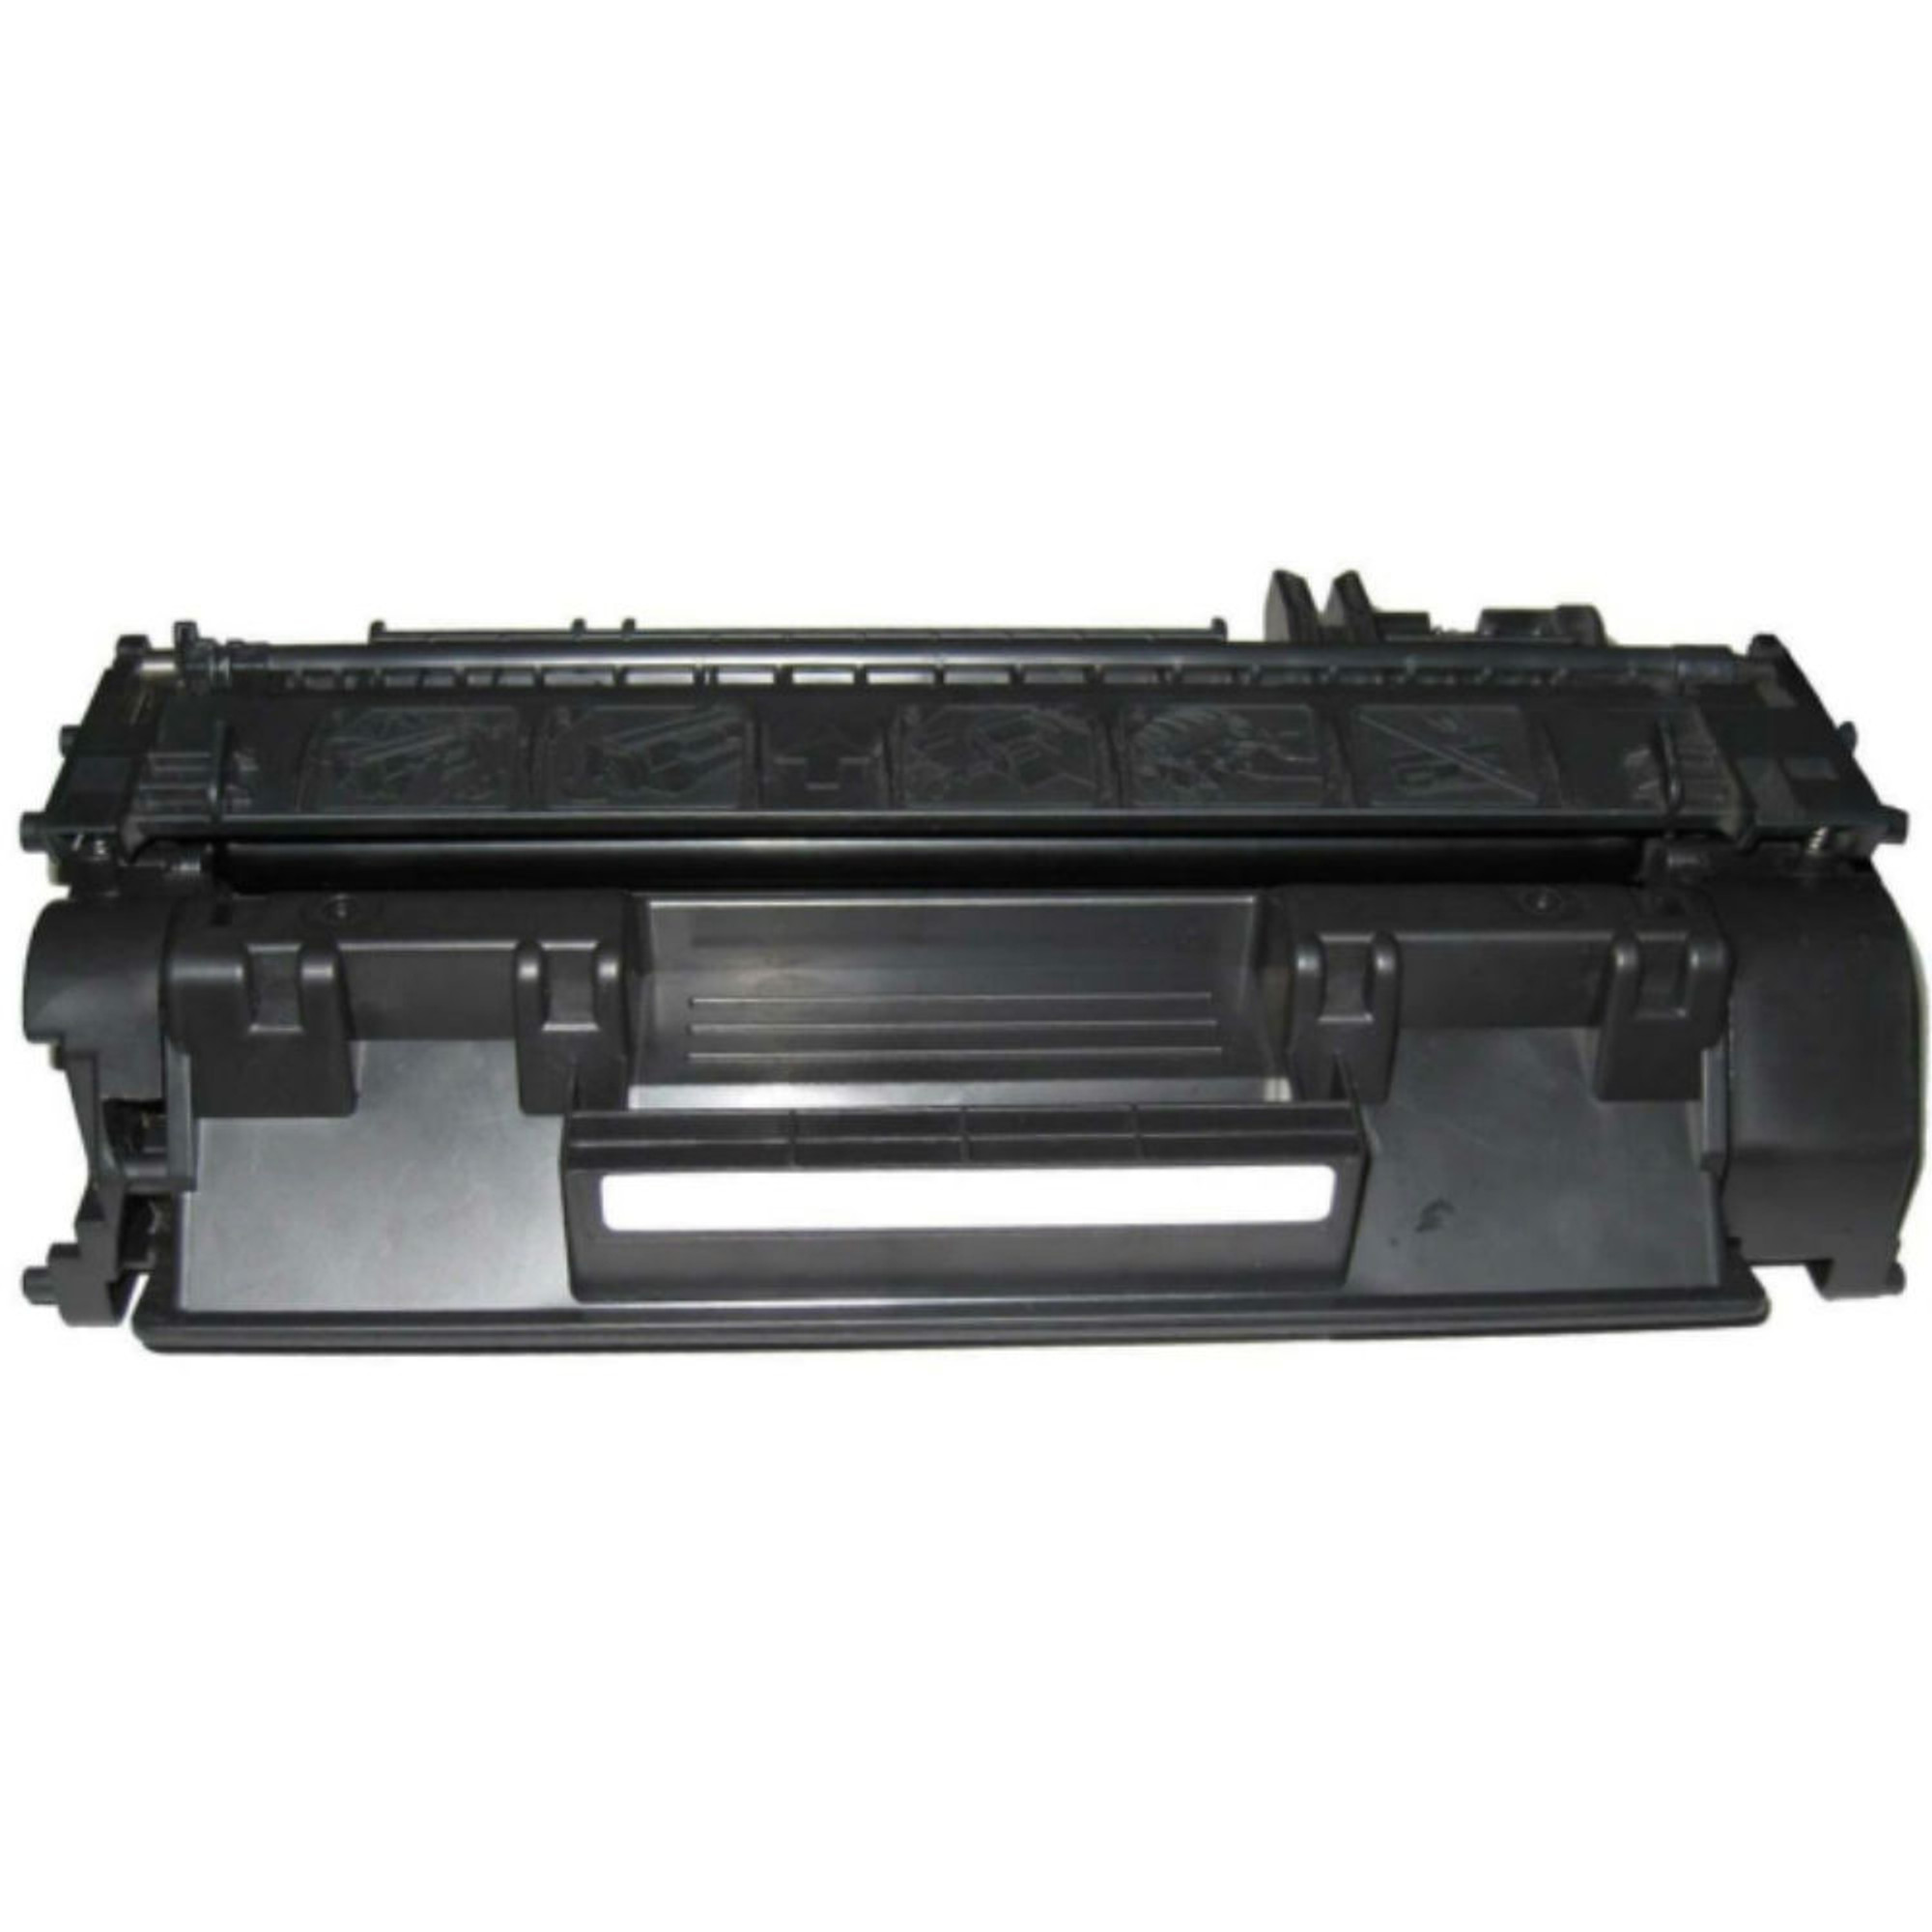 MICR Toner for HP Laserjet P2035, P2035n, P2055, P2055dn & P2055x Printer